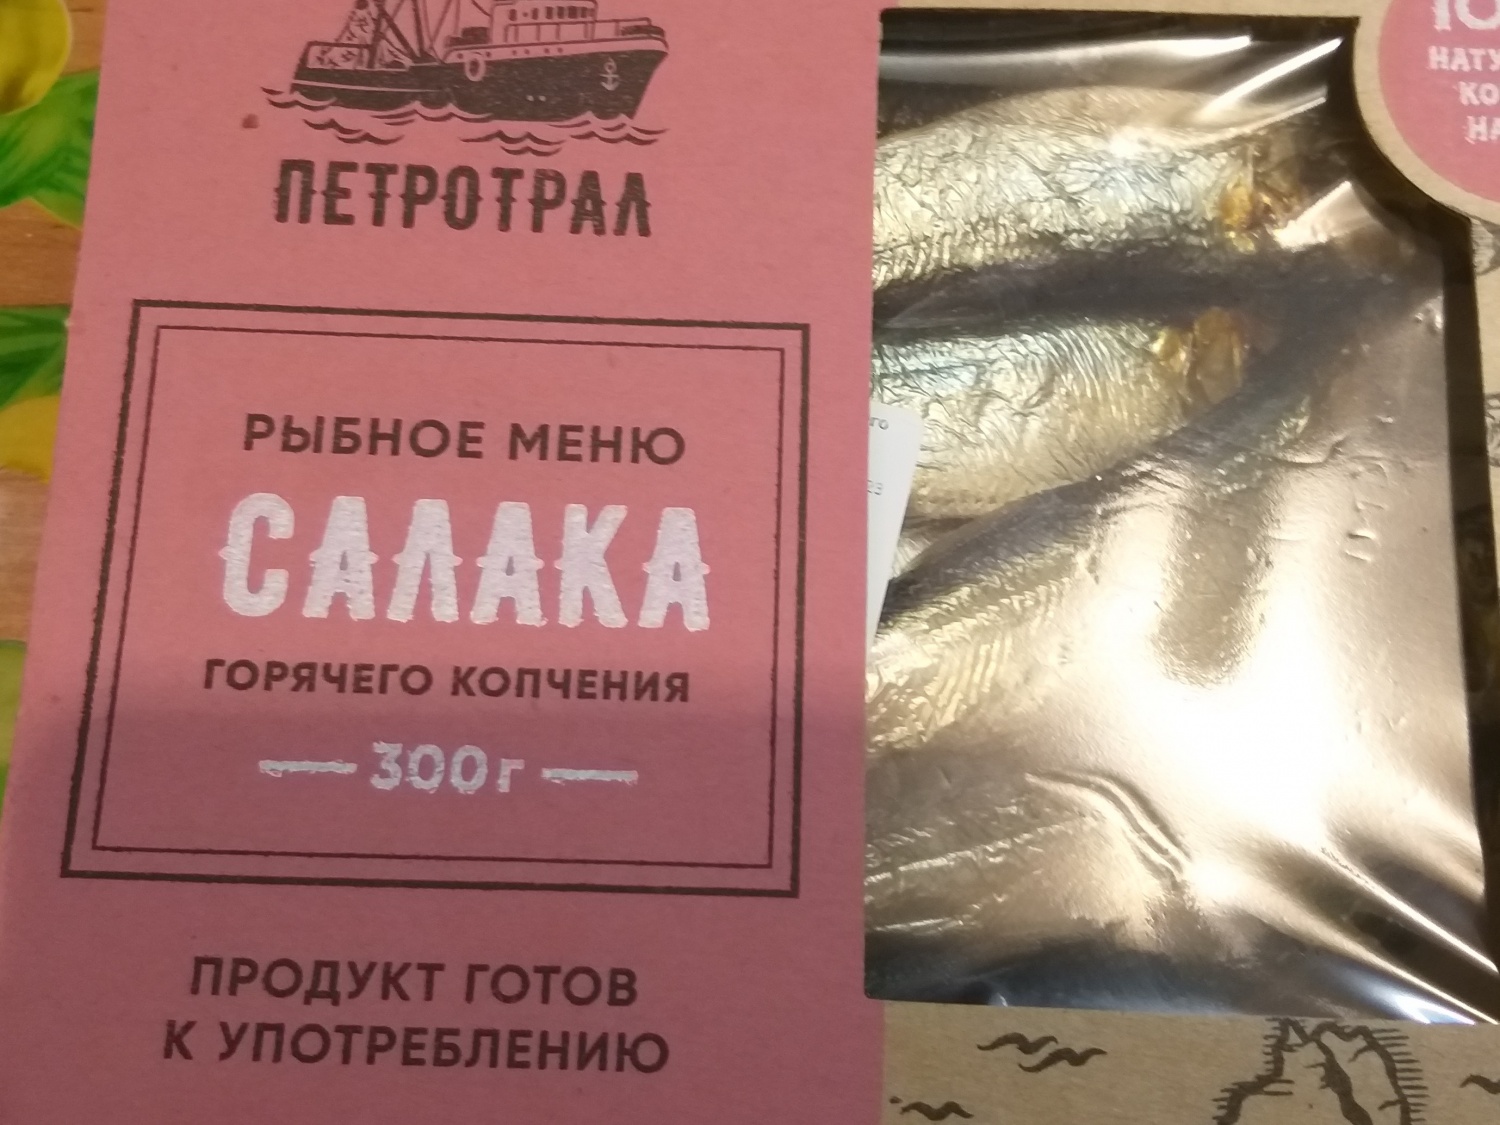 Рыба Петротрал Салака горячего копчения - «Рыбка со вкусом из детства. » |  отзывы